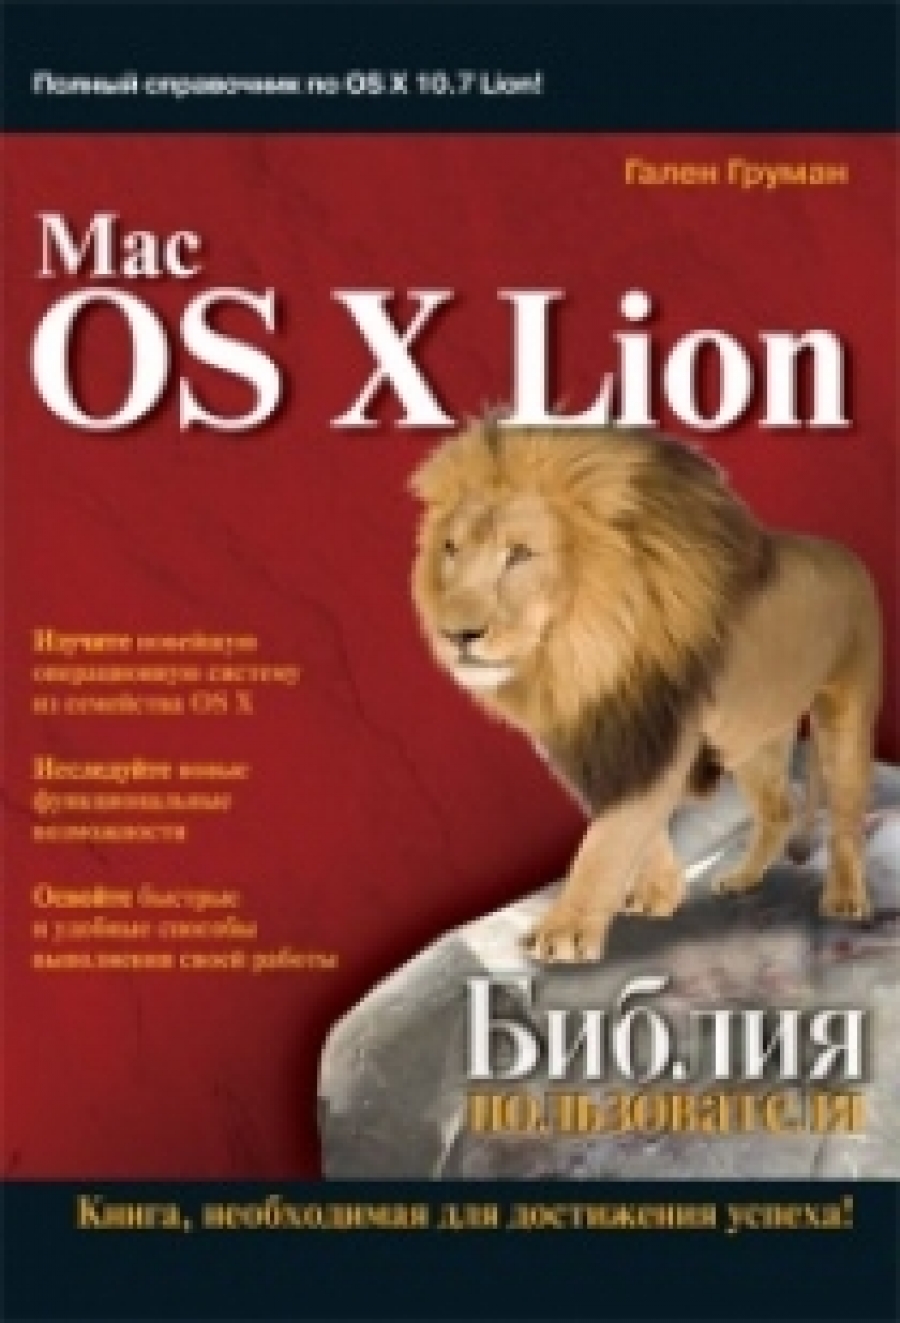   Mac OS X Lion.   